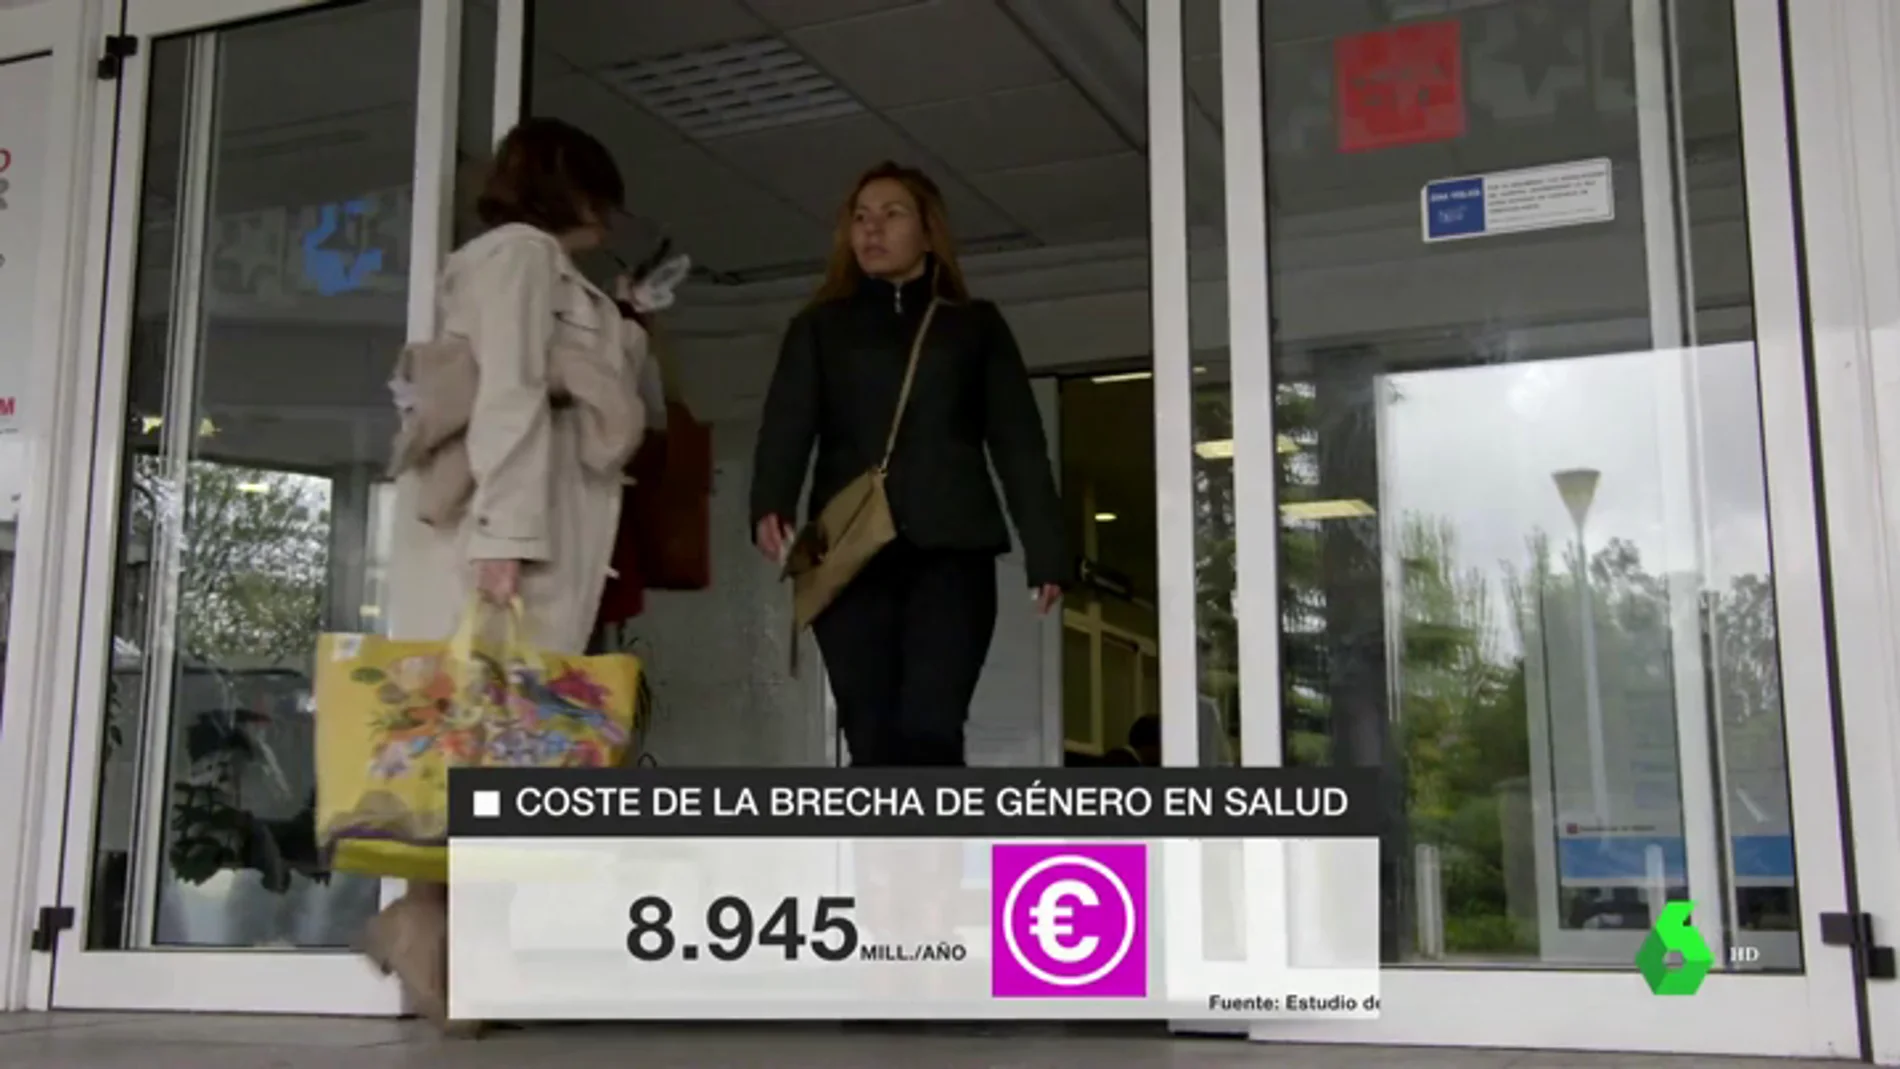 La brecha de género en salud cuesta casi 9.000 millones de euros al año al Estado español